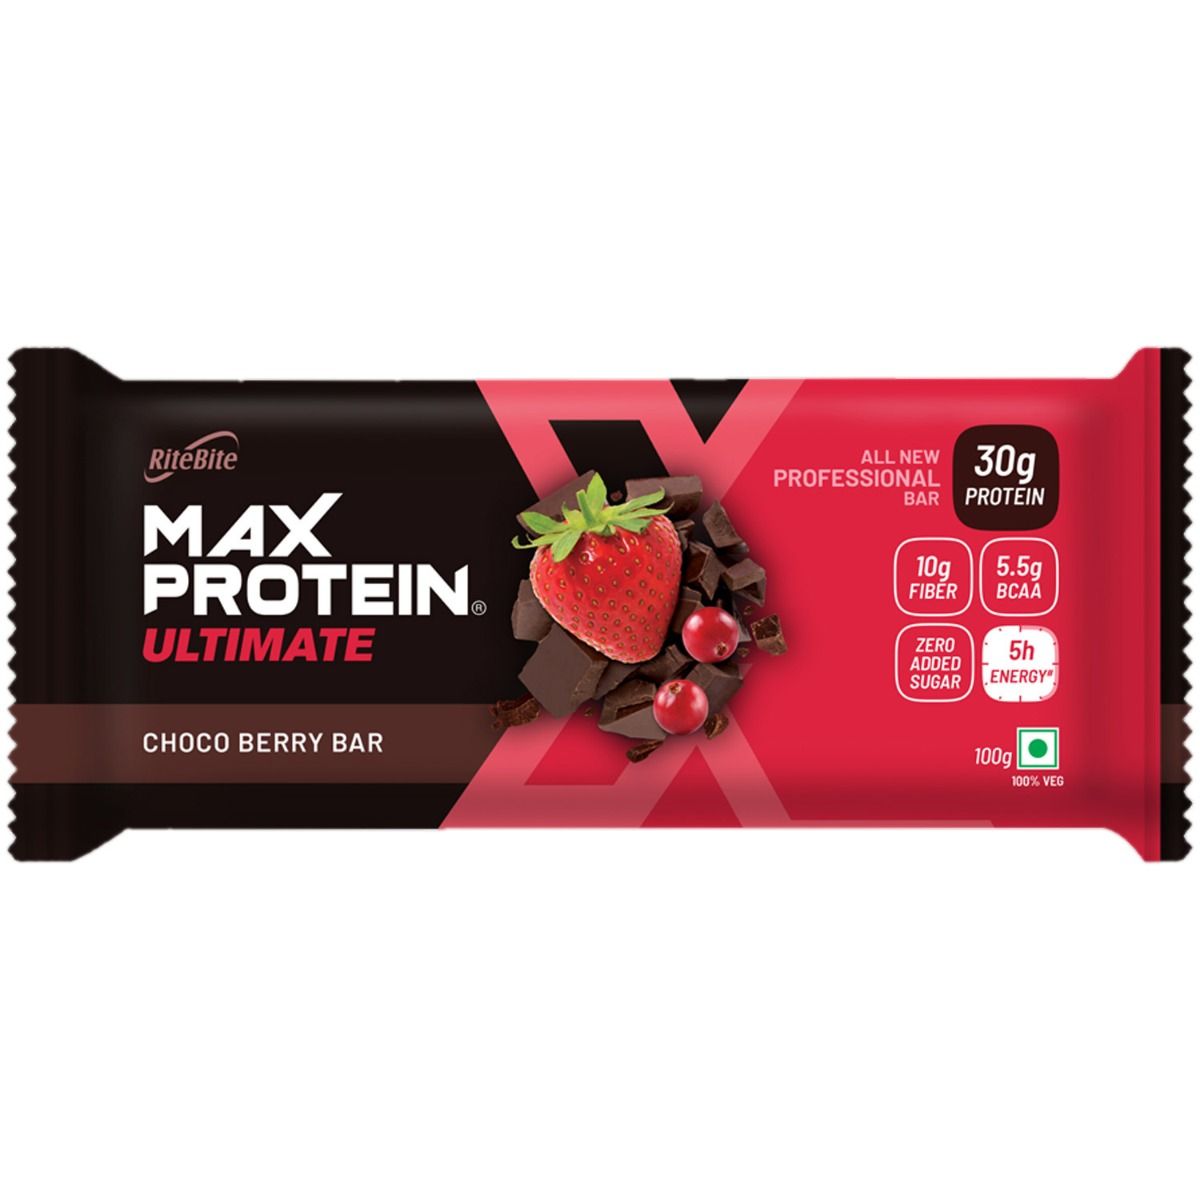 Buy Ritebite Max Protein Choco Berry Bar 100g Online